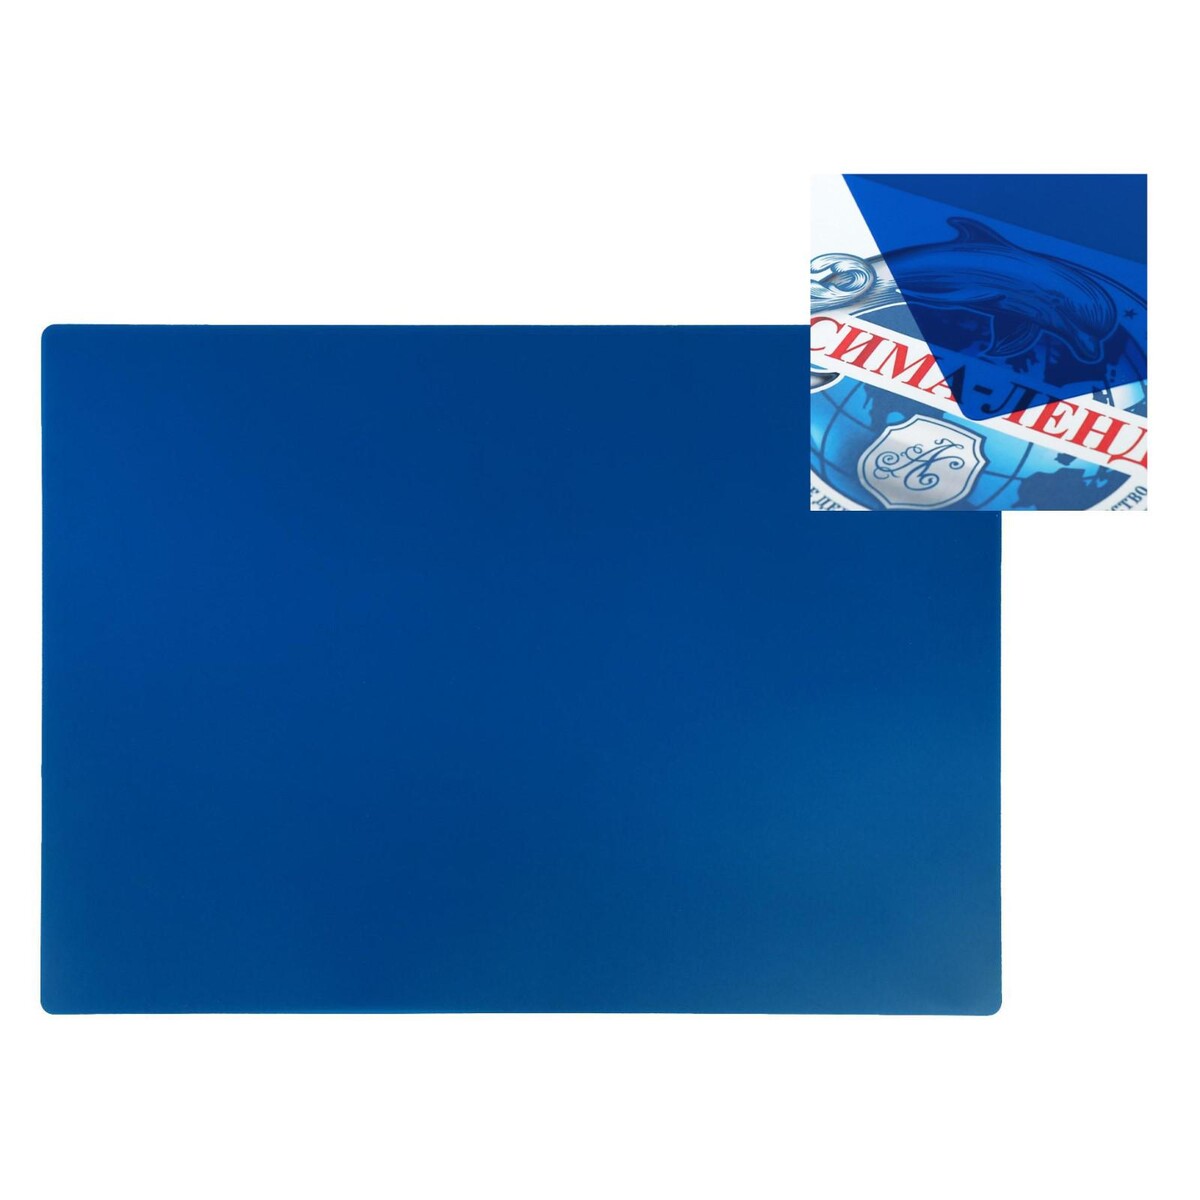 Накладка на стол пластиковая а3, 460 х 330 мм, 500 мкм, прозрачная, цвет темно-синий (подходит для офиса) точилка пластиковая синий человек паук